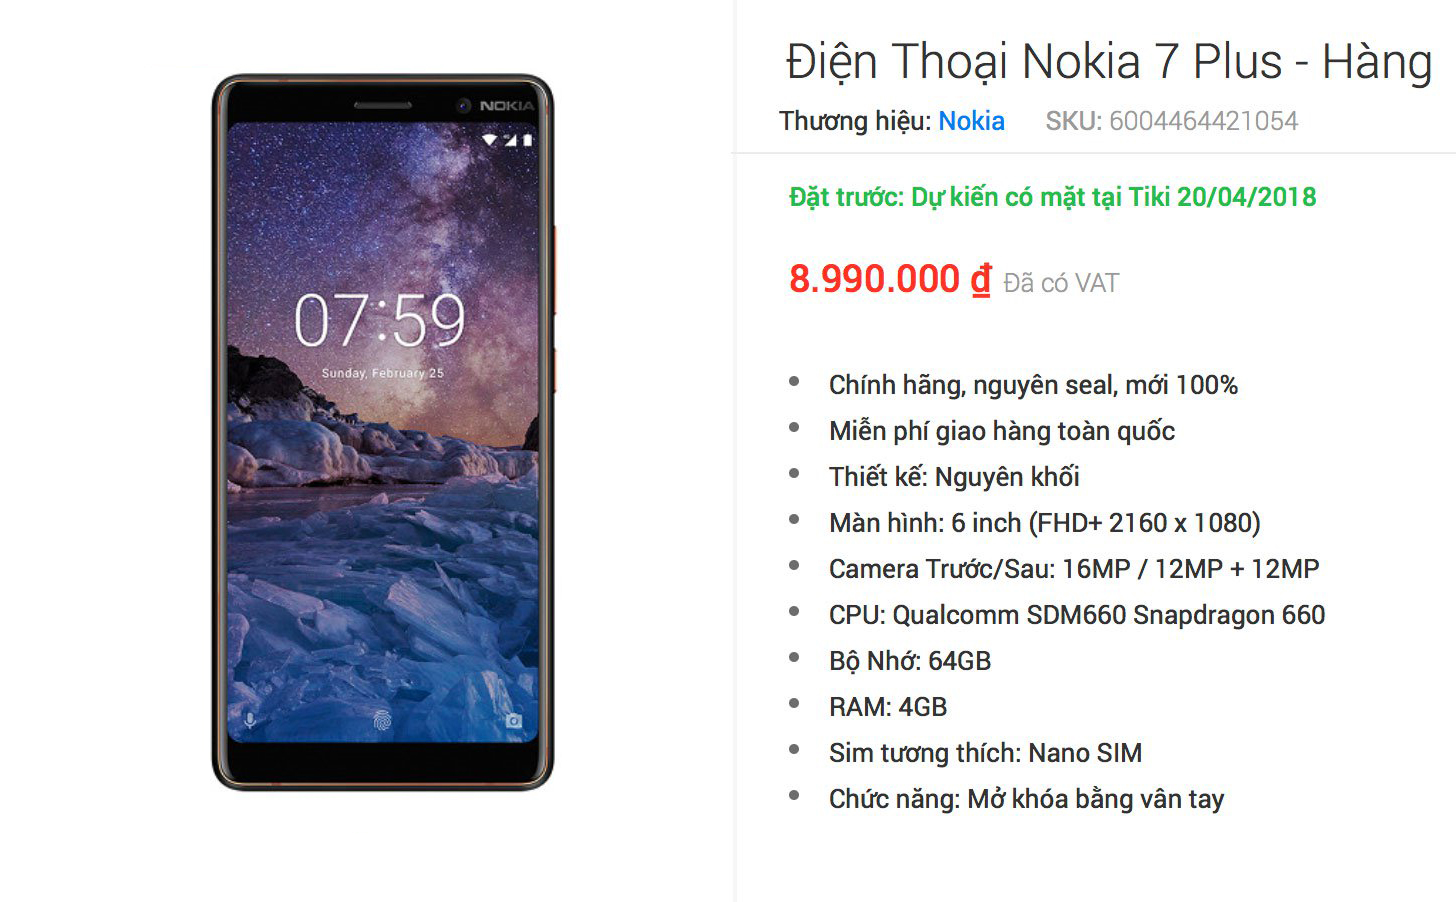 Nokia 7 Plus chính hãng có giá 8,99 triệu đồng, anh em có mua không?